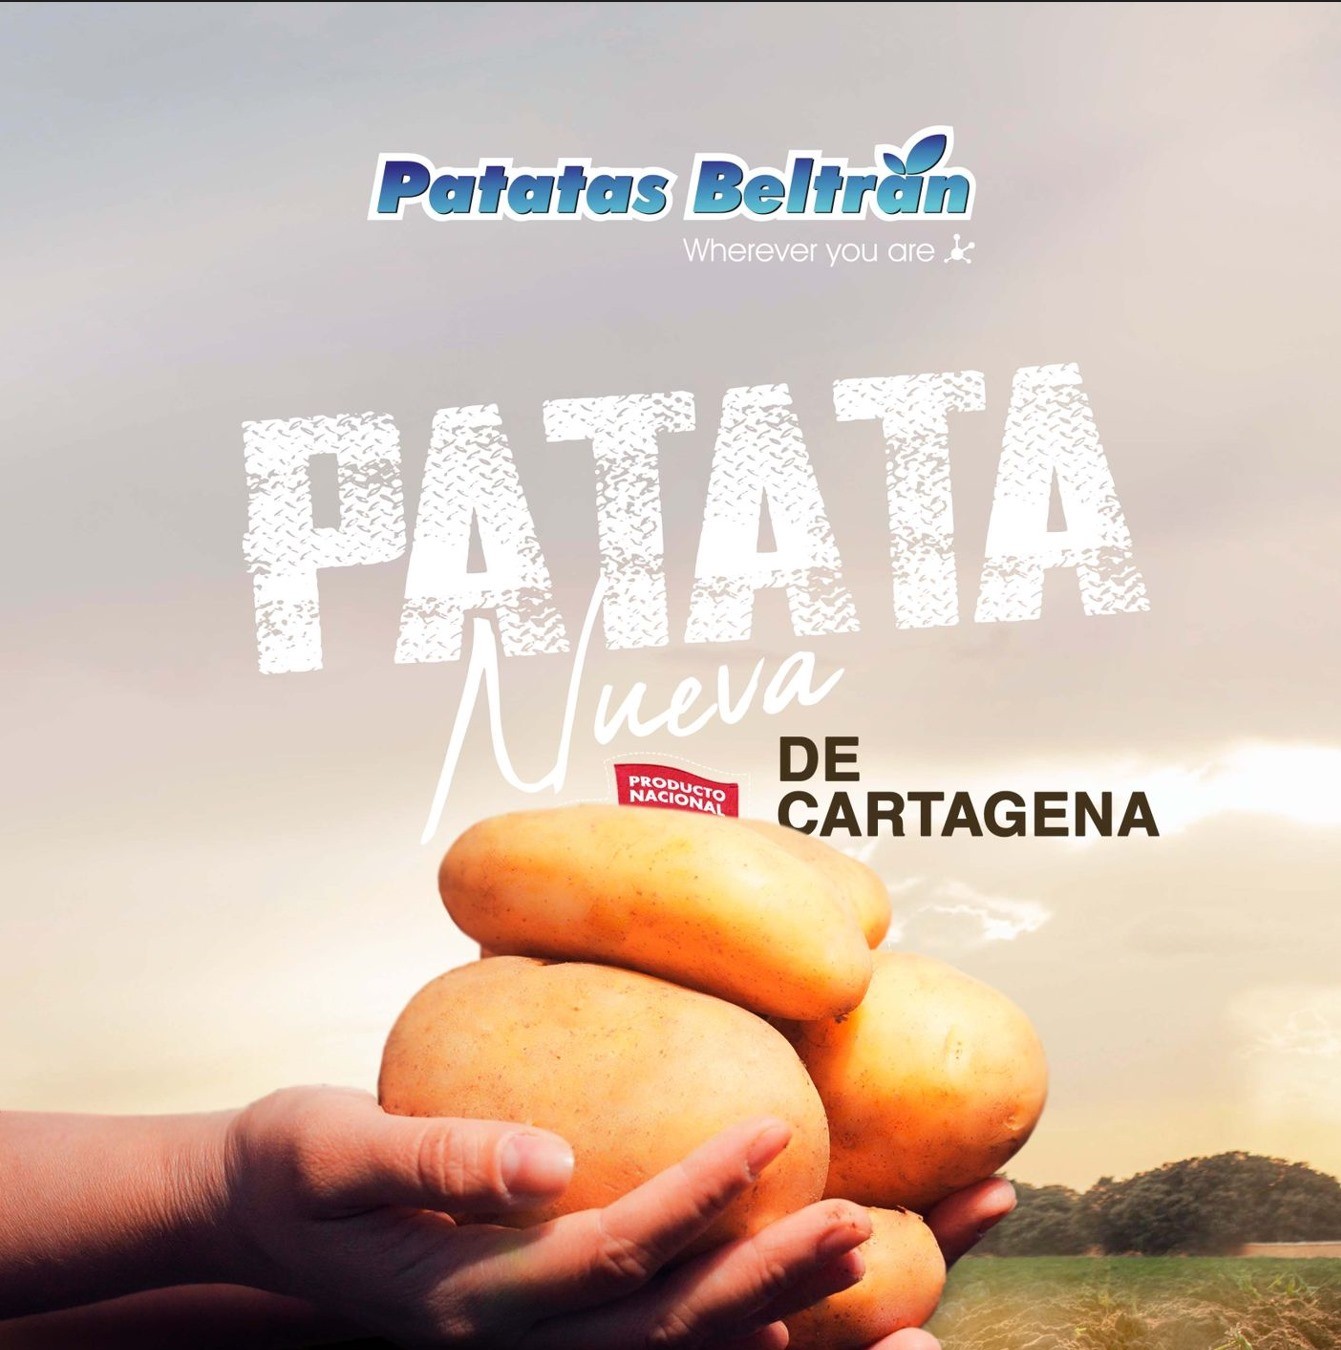 Patatas nuevas españolas